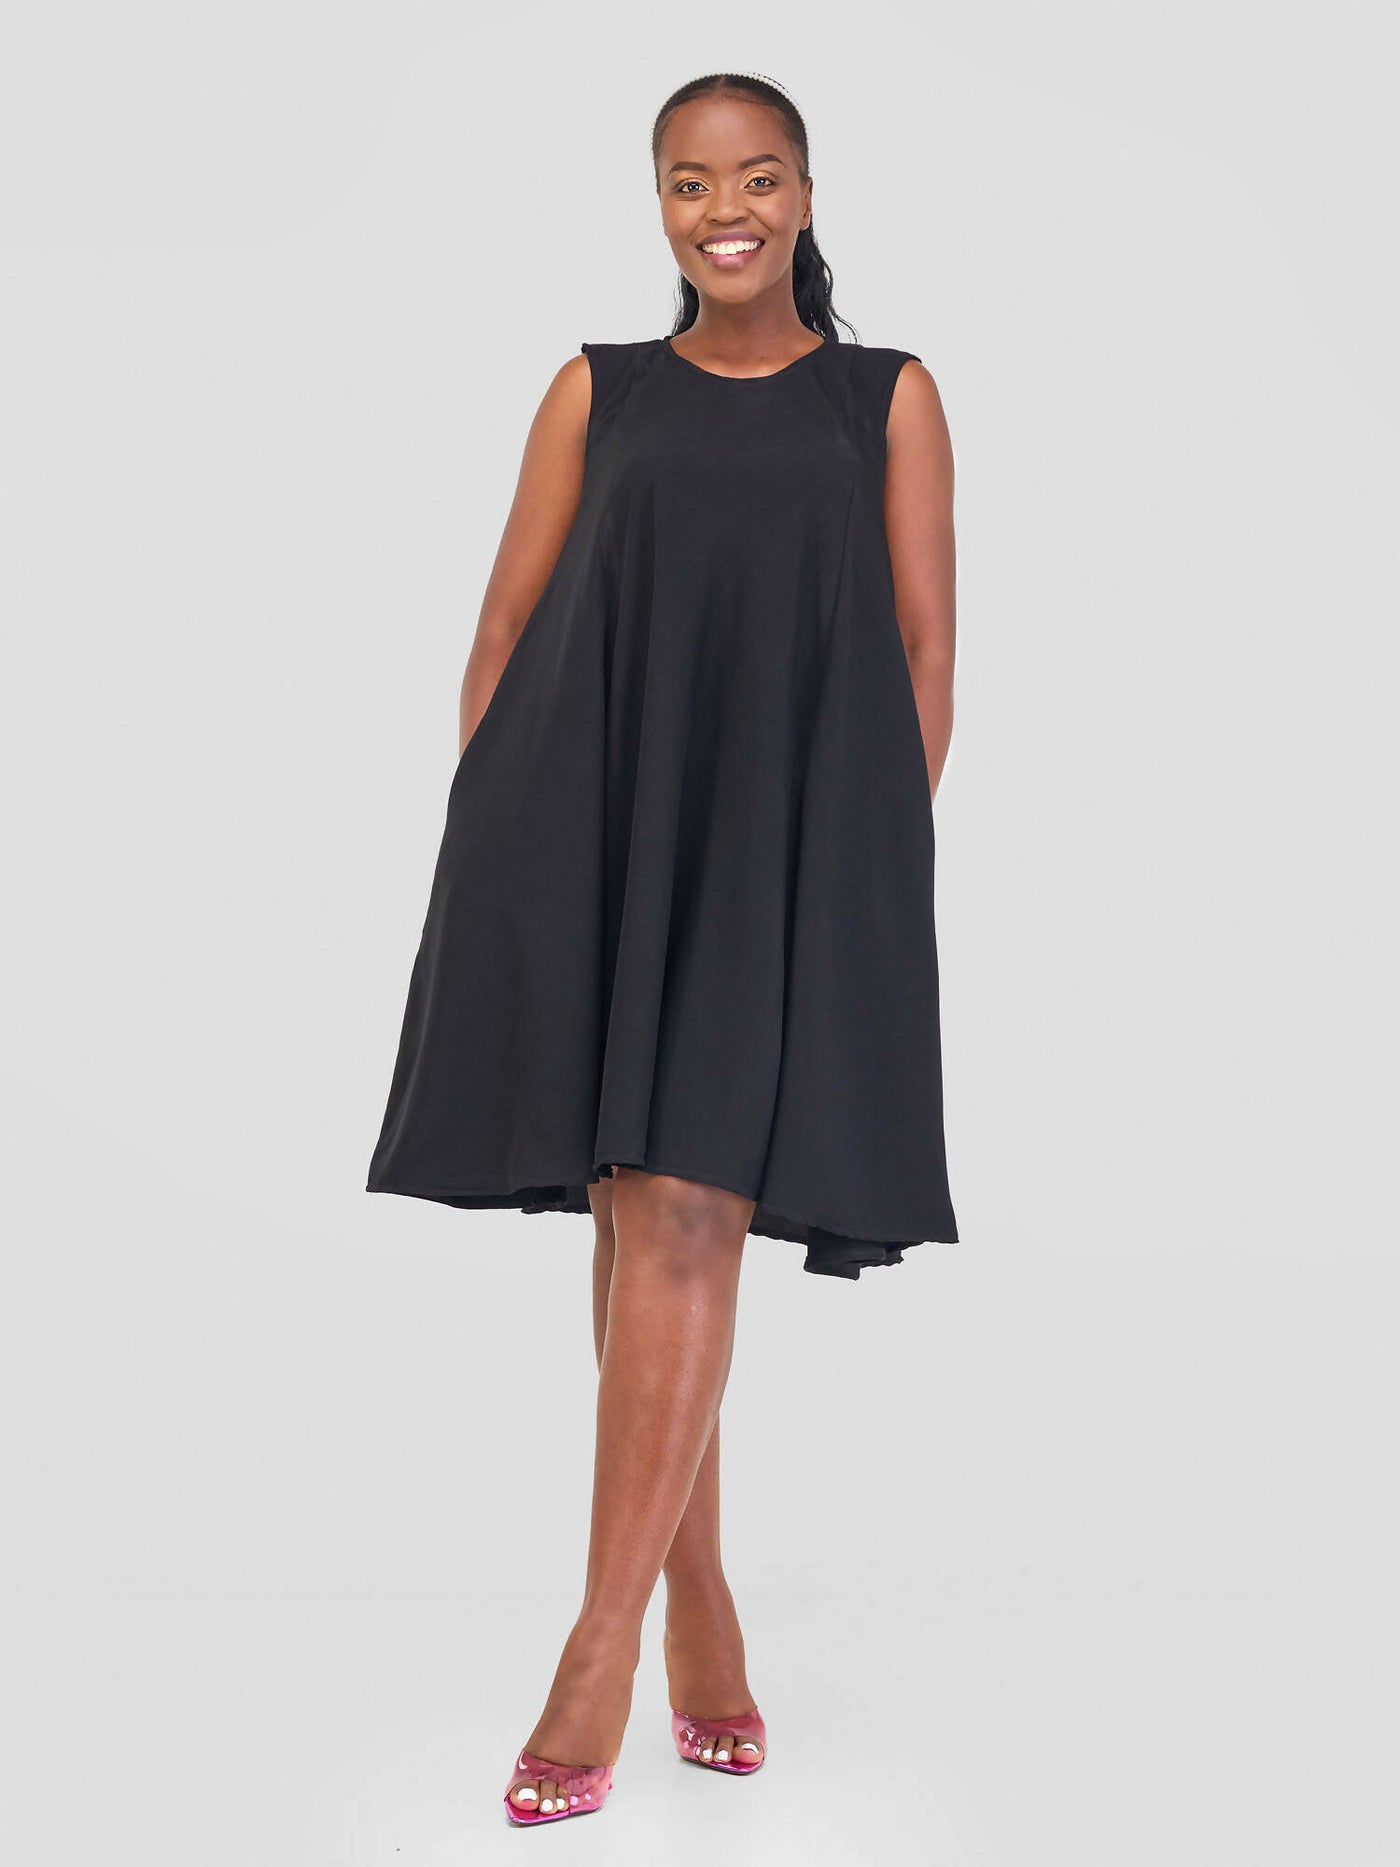 Mnubistyle Sekina Dress - Black